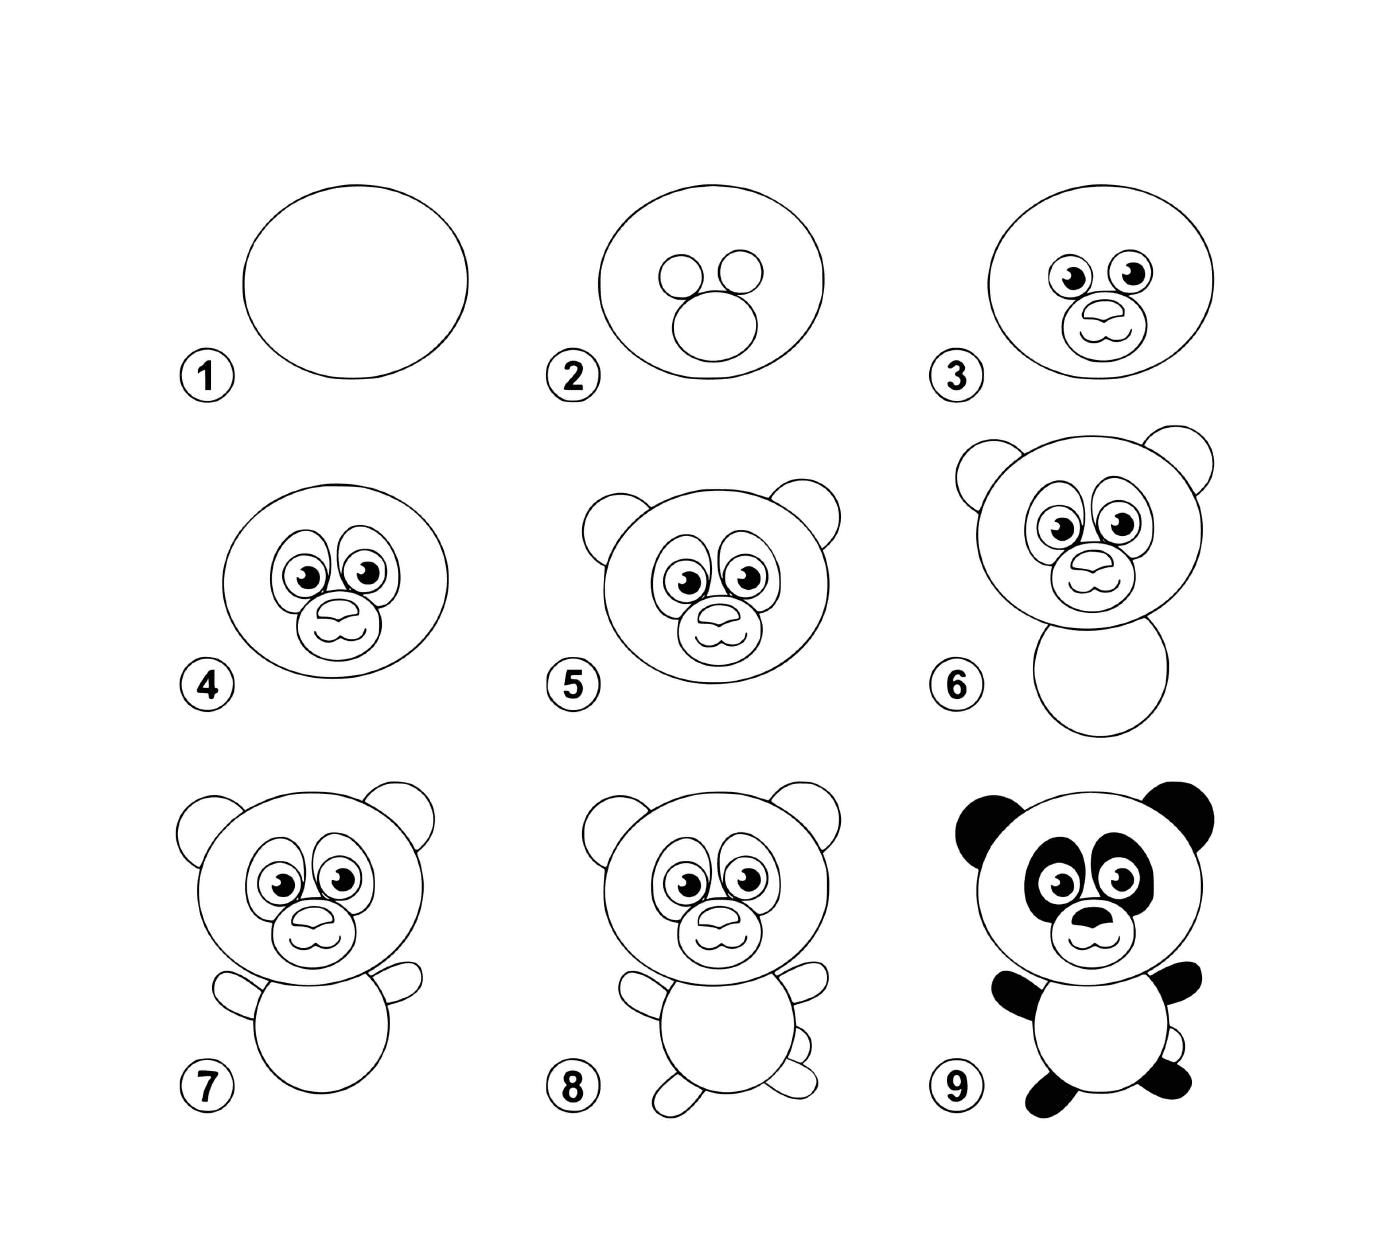  كيف يمكن رسم الباندا خطوة بخط خطوة بخط خطوة 